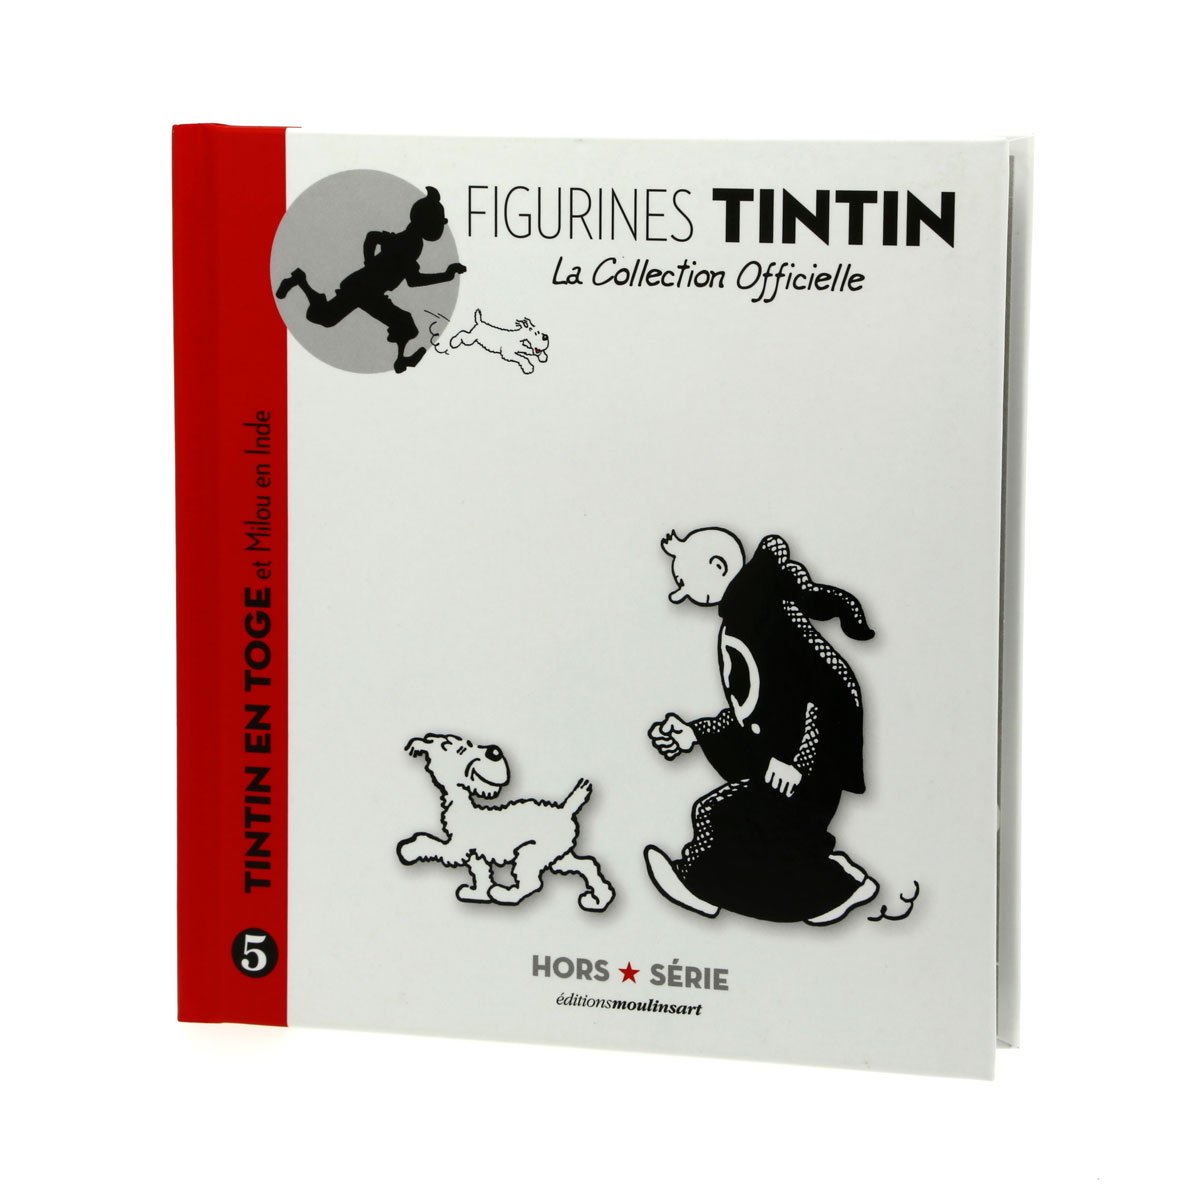 Resin figurine Tintin in toga